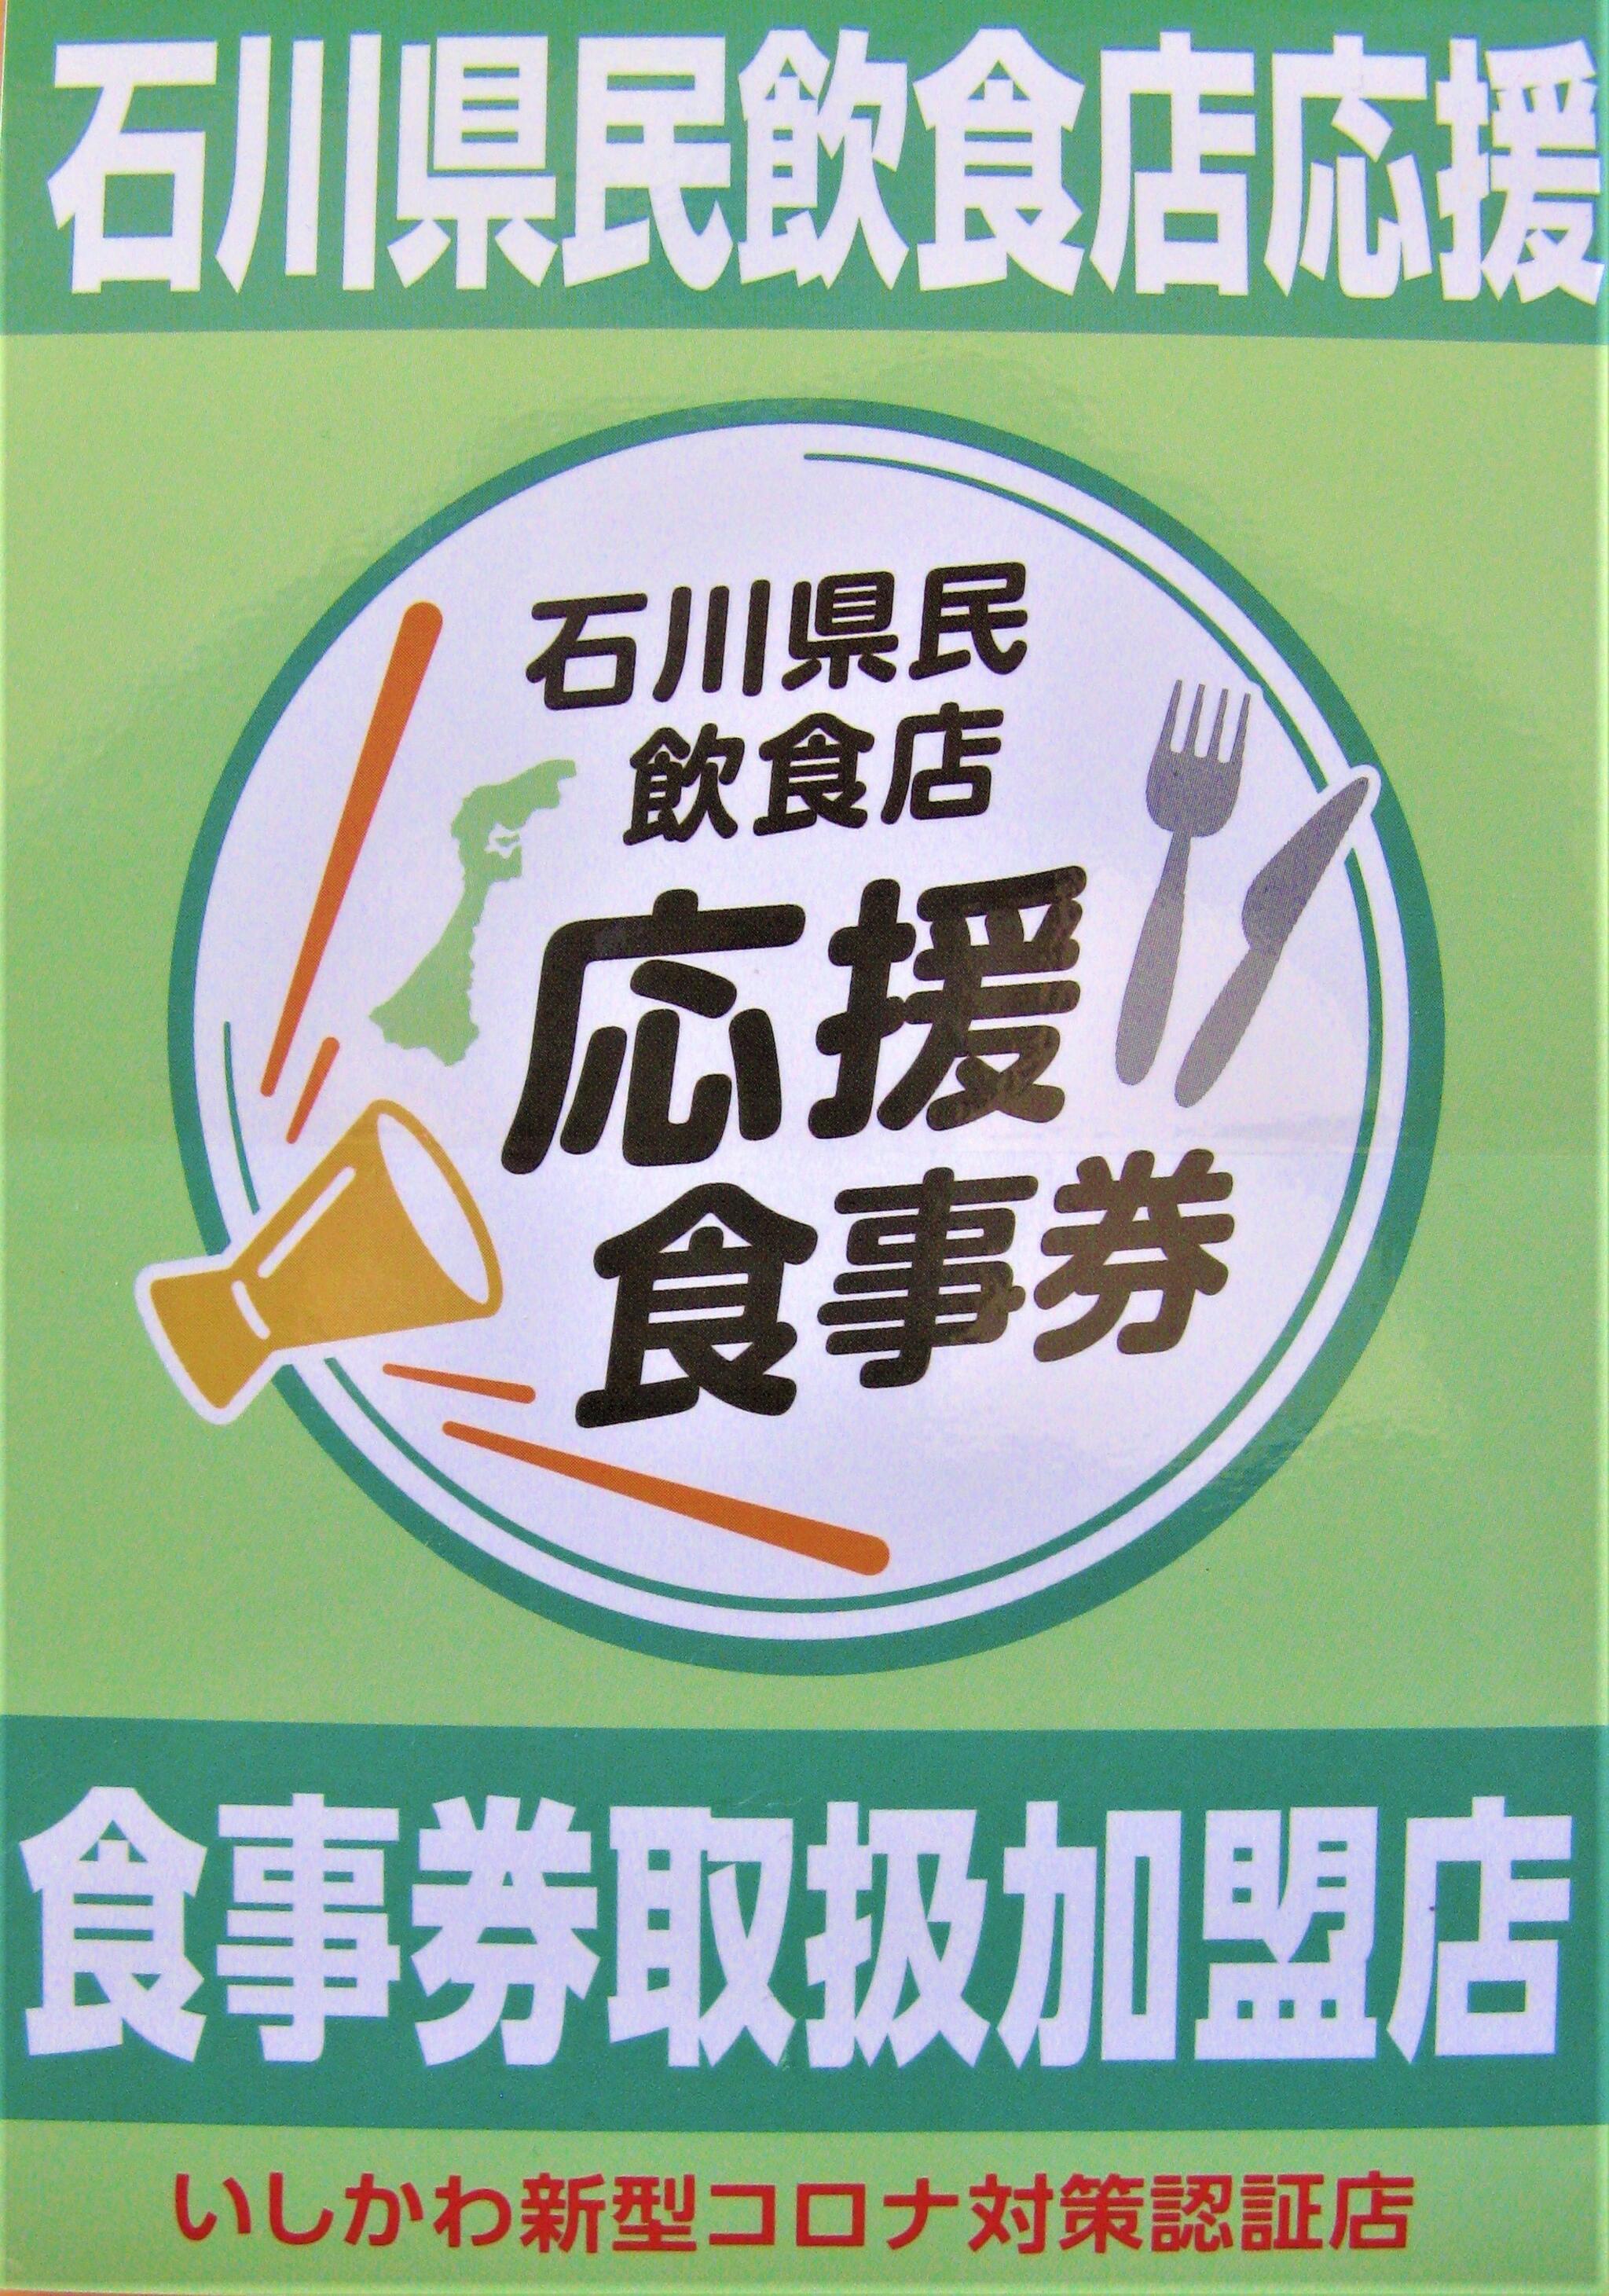 健康食工房 たかのからのお知らせ(GOTO EATの次は「石川県民食事券」で！)に関する写真